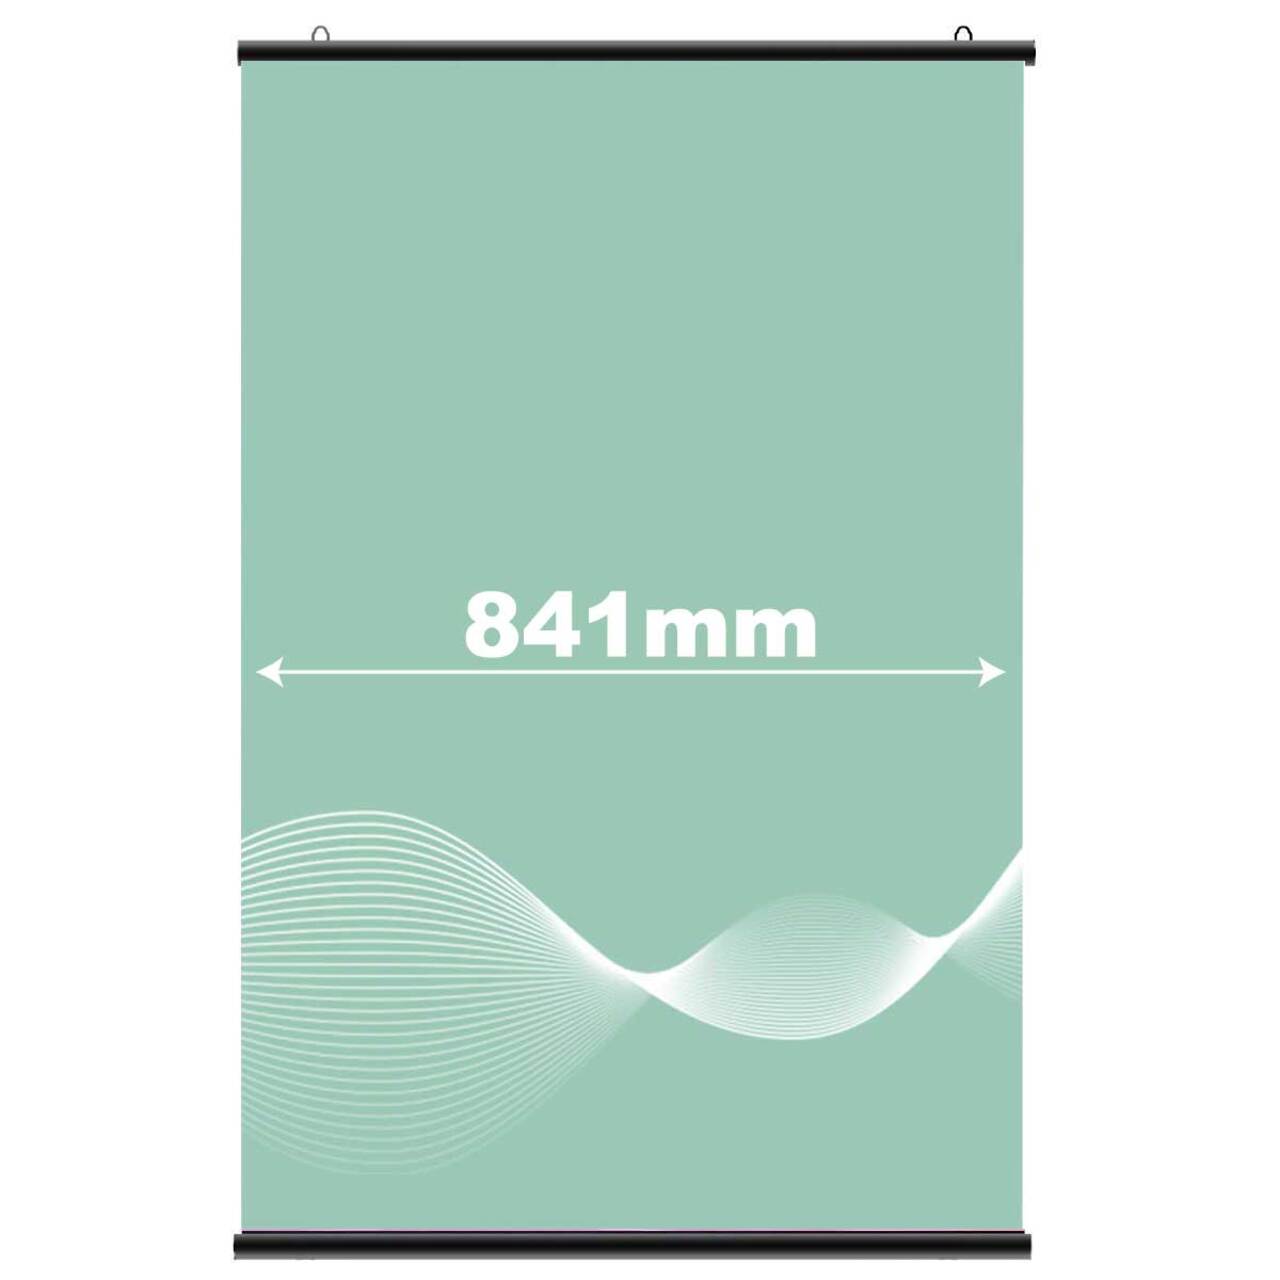 Suport poster tip hanger click NEGRU, JJ DISPLAYS, 841 mm